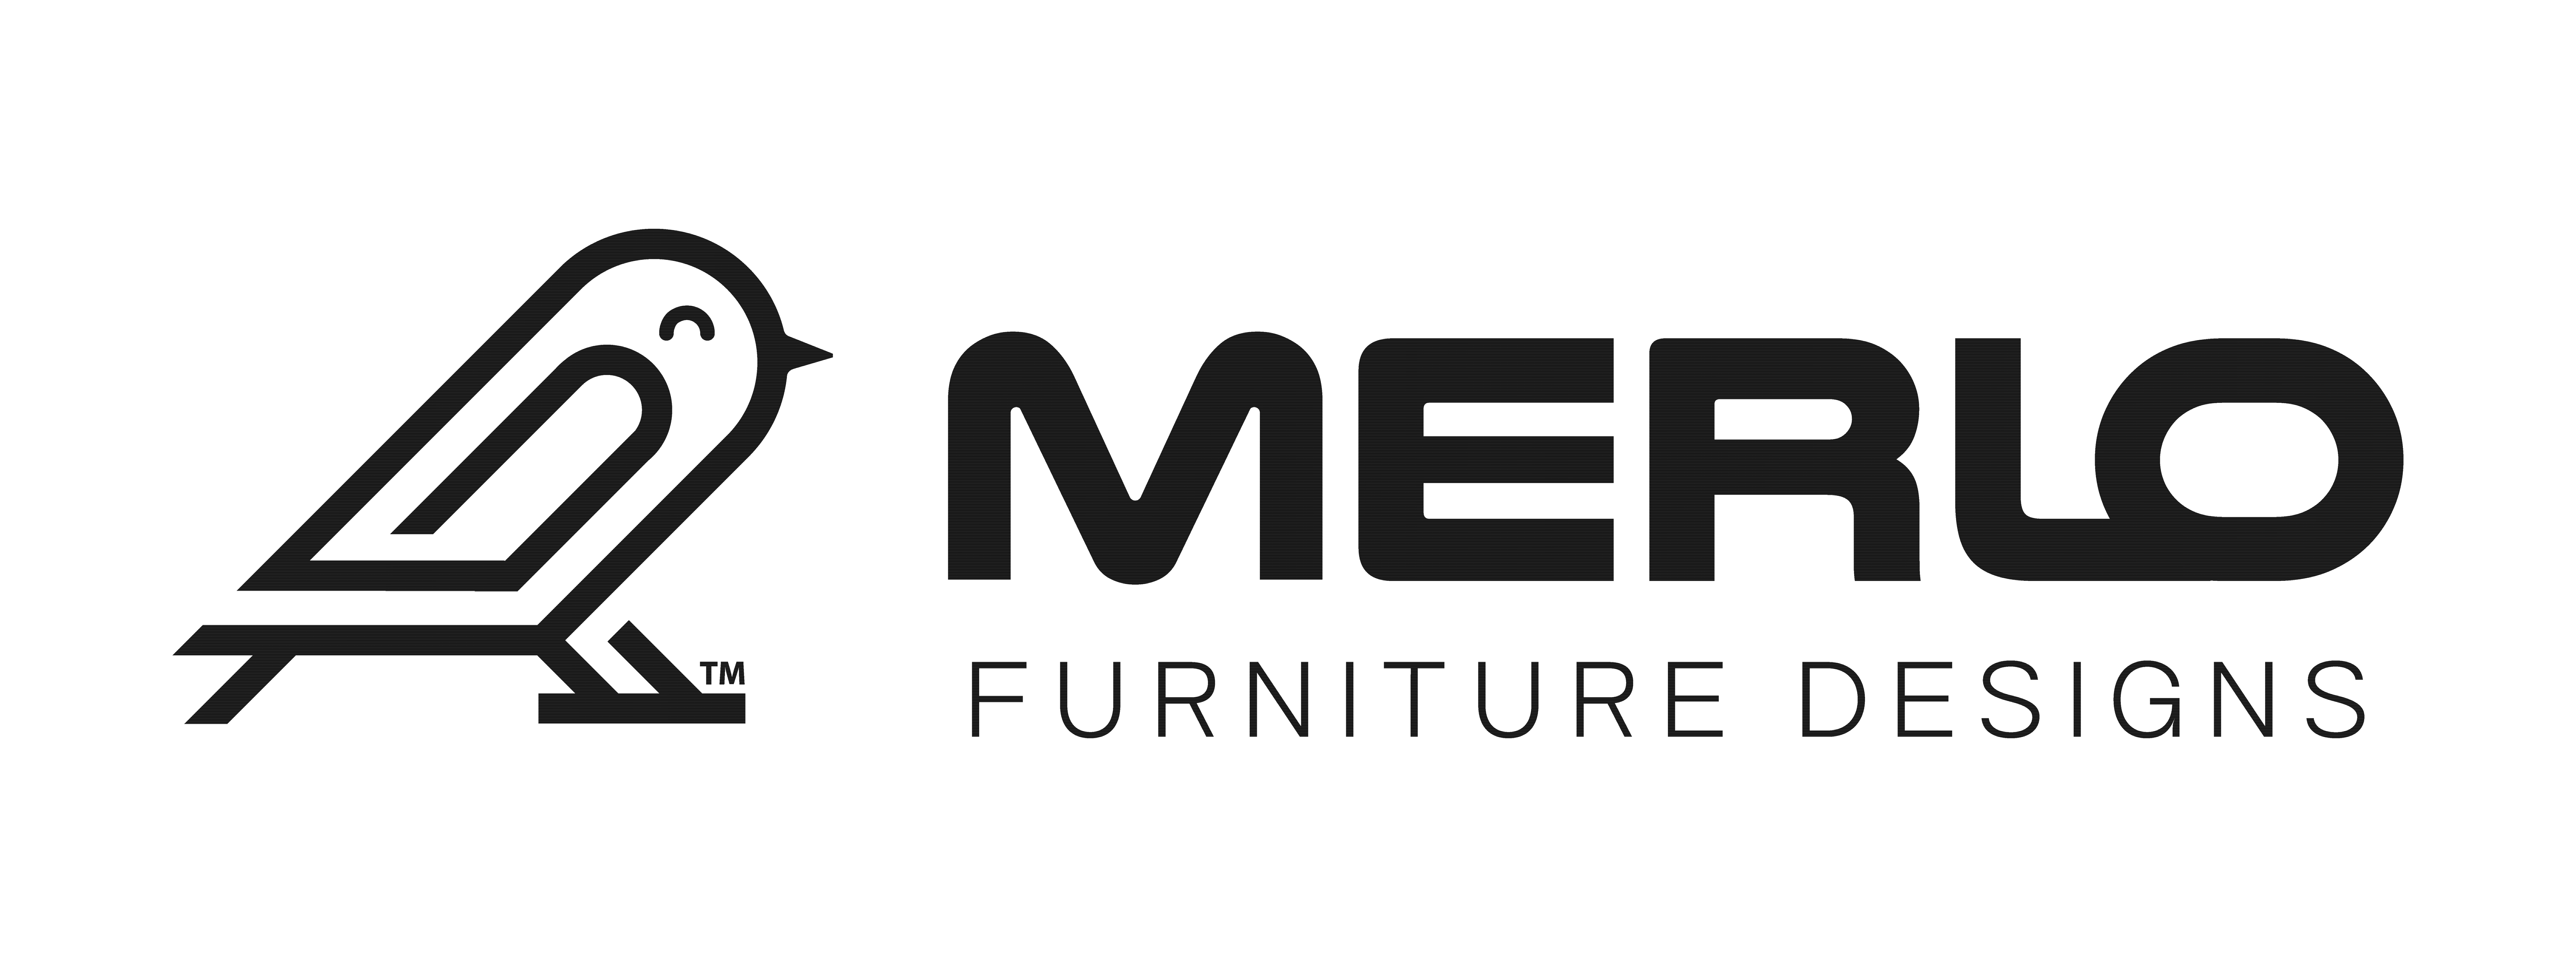 Merlo Furniture Design